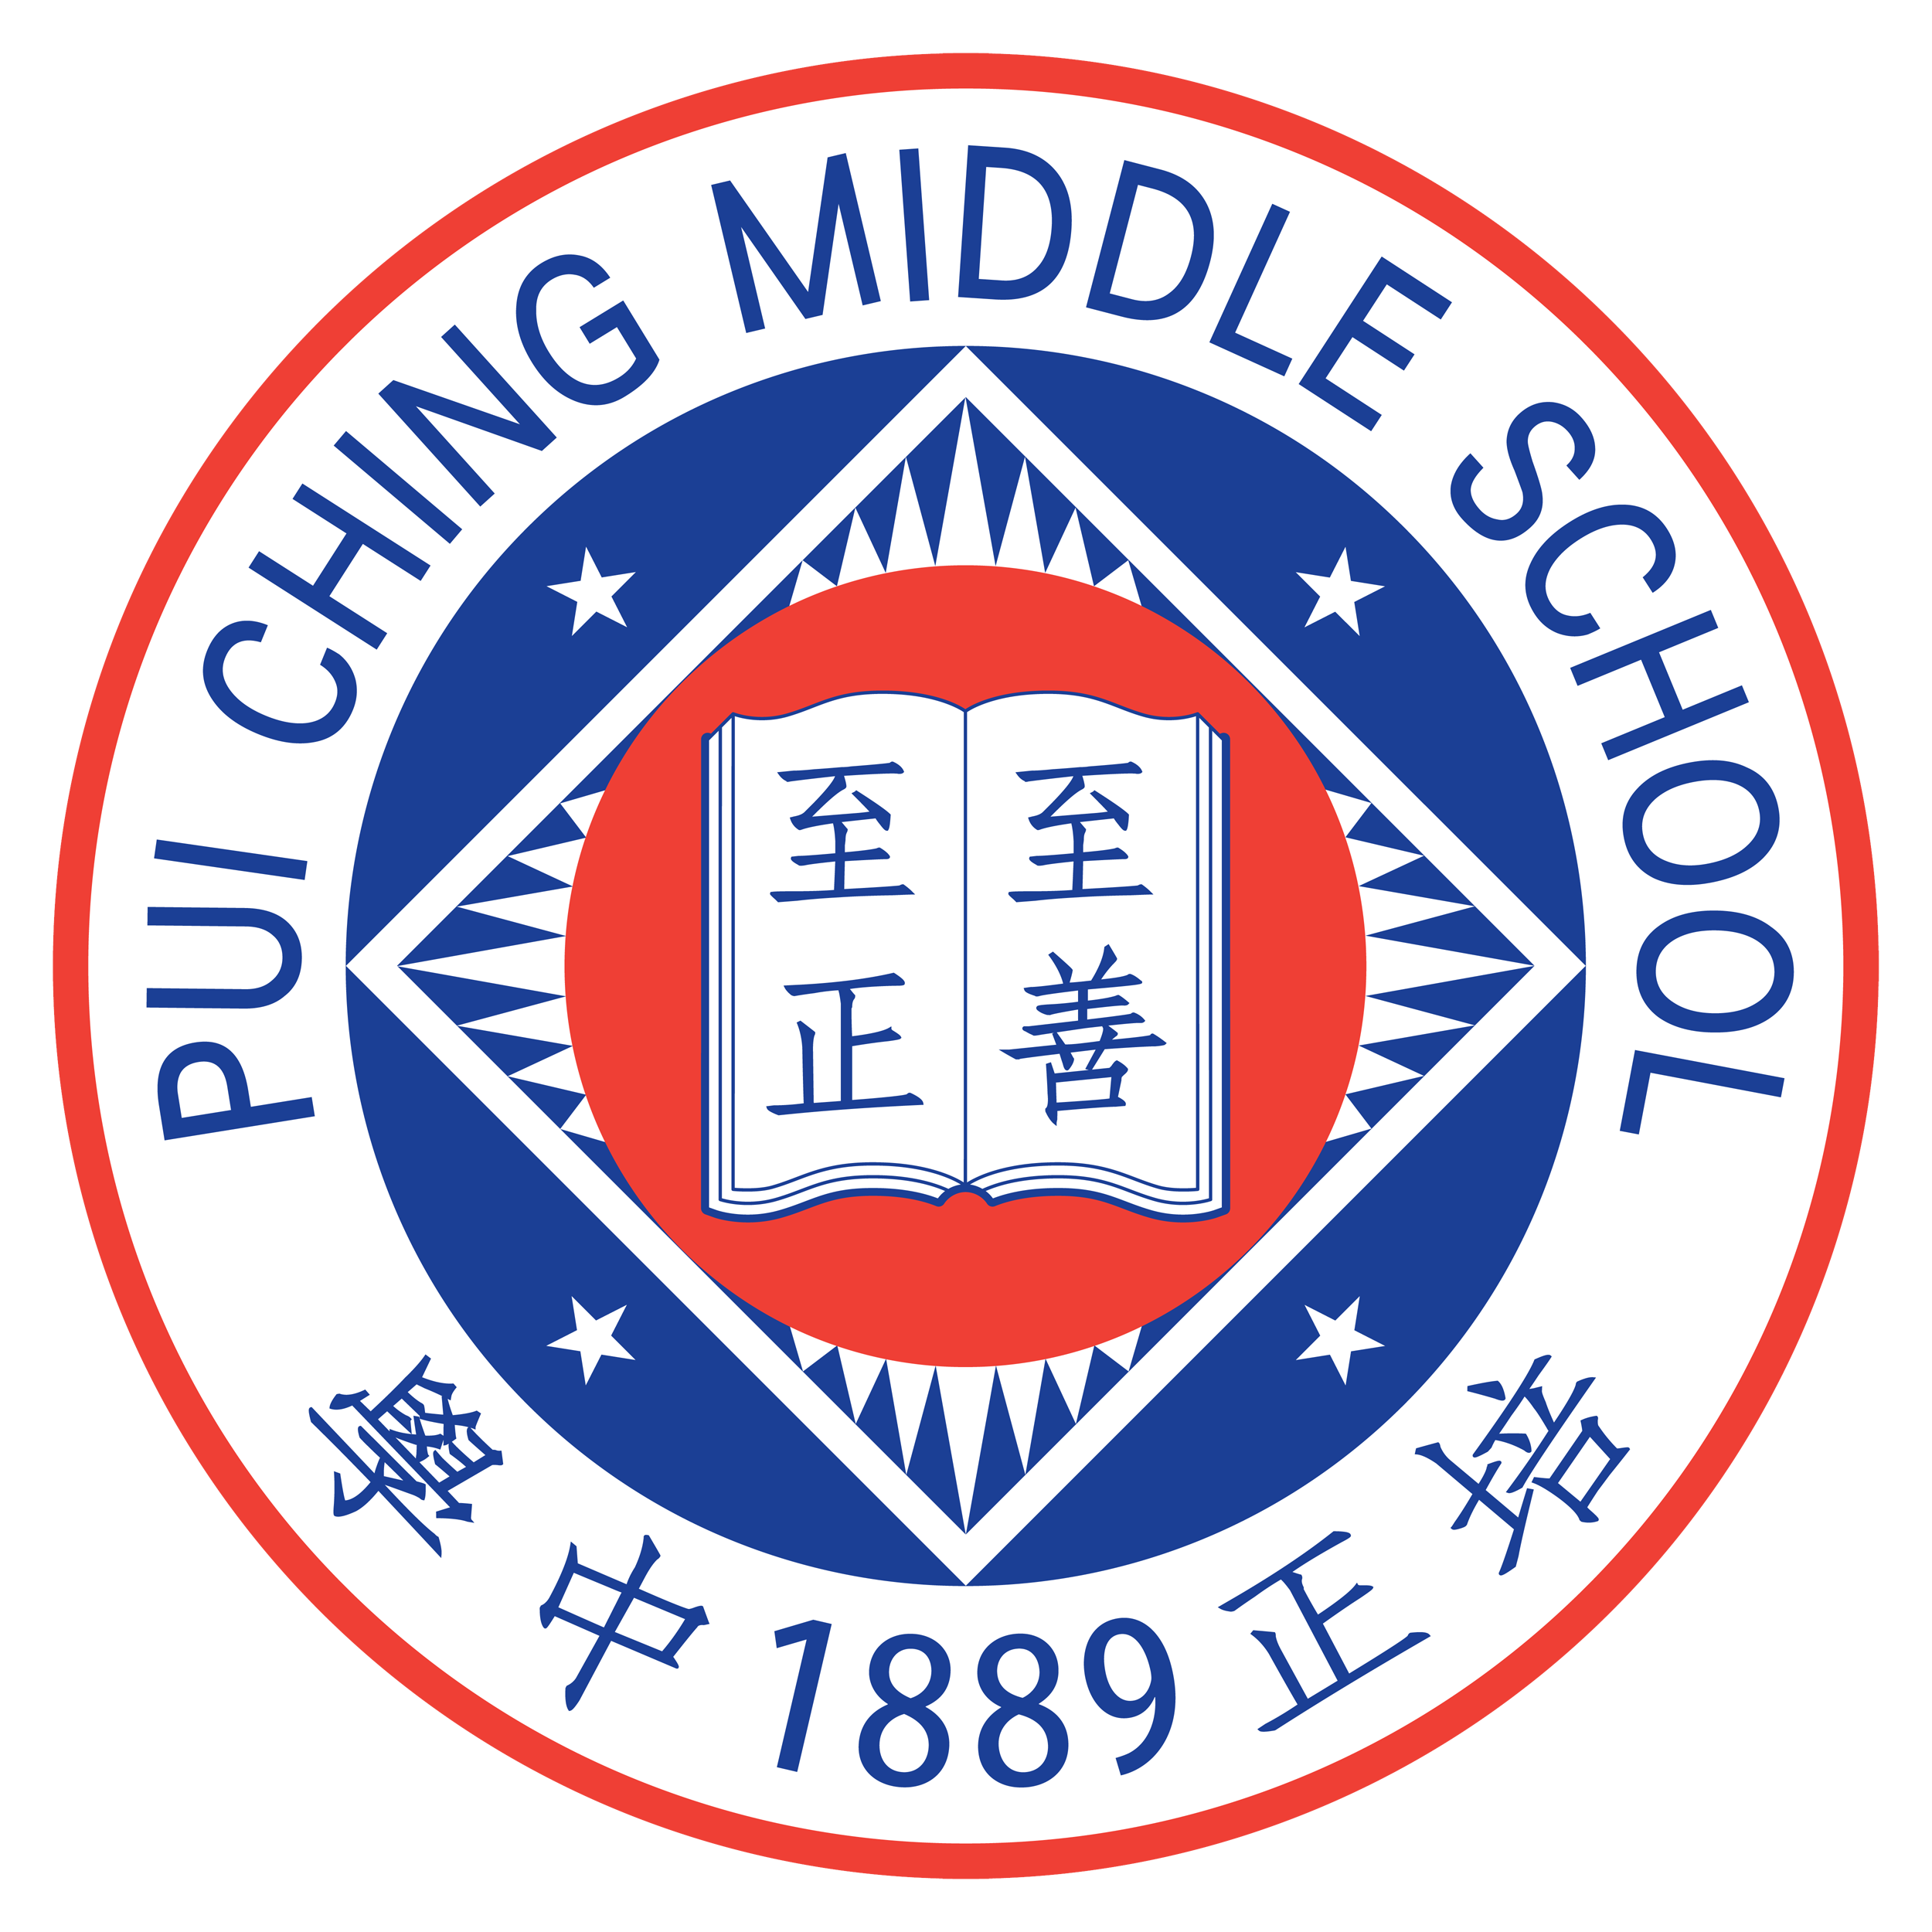 School badge